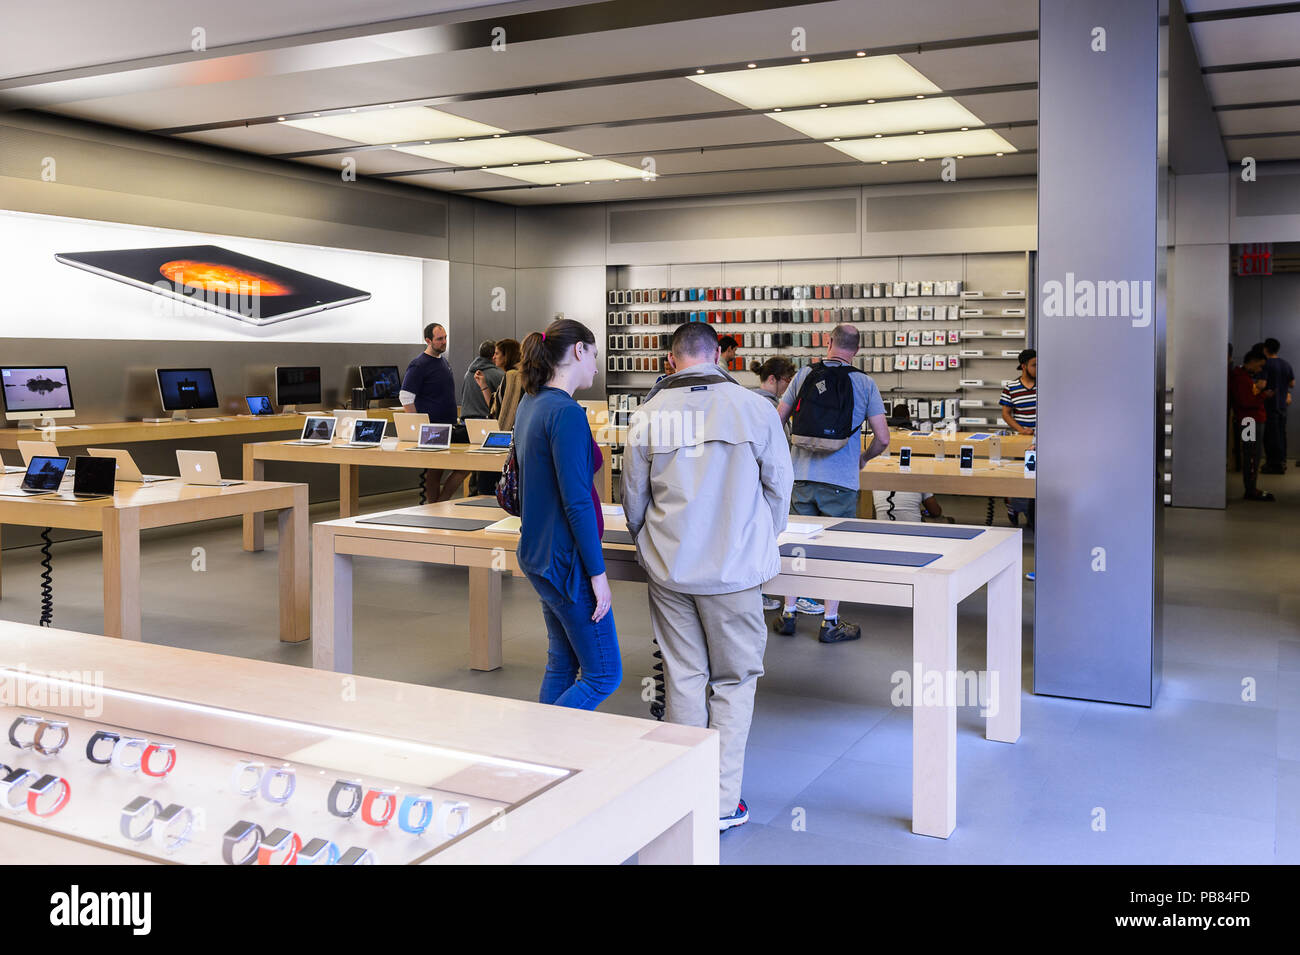 NEW YORK, USA - Sep 22, 2015 : l'intérieur de l'Apple store sur la Cinquième Avenue, New York. Le magasin vend des ordinateurs personnels Macintosh, logiciels, iPod, Banque D'Images